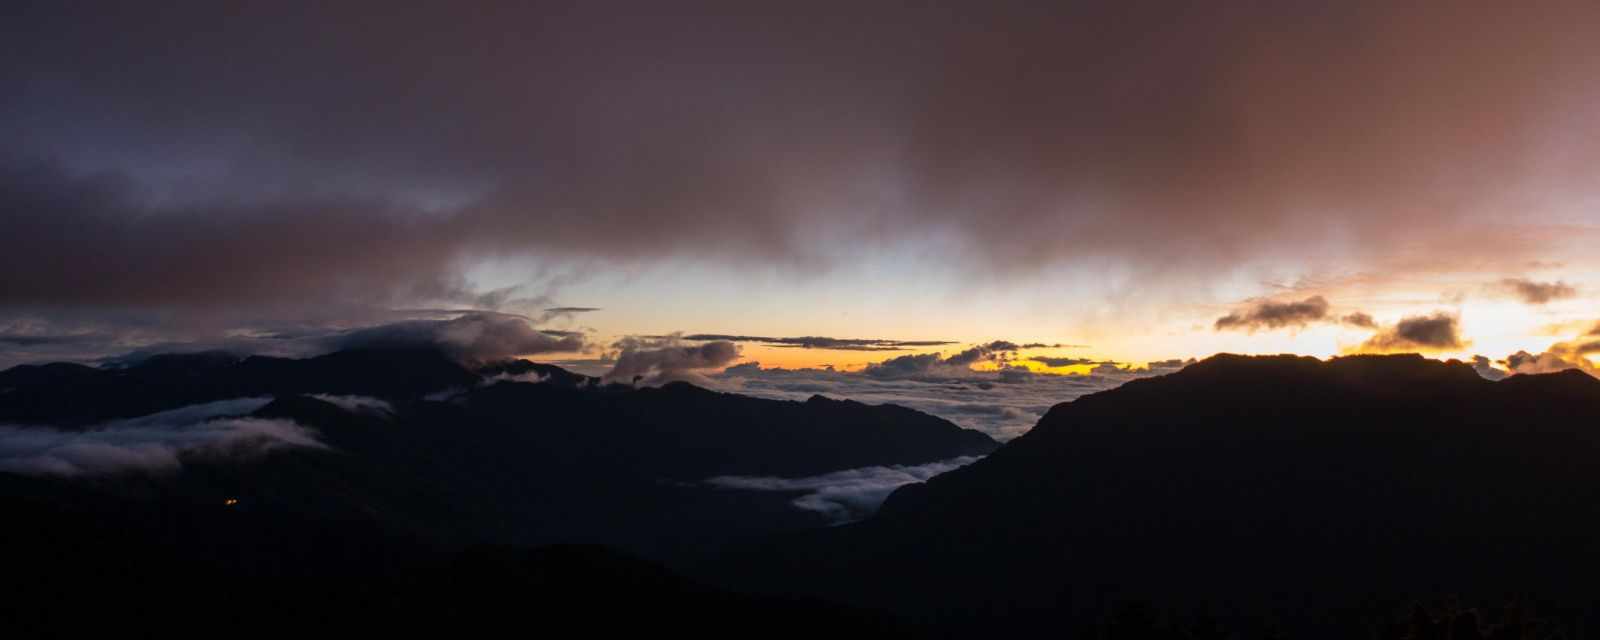 Mount Hehuanshan - Sunrise | Weather | Winter Visit and Snow